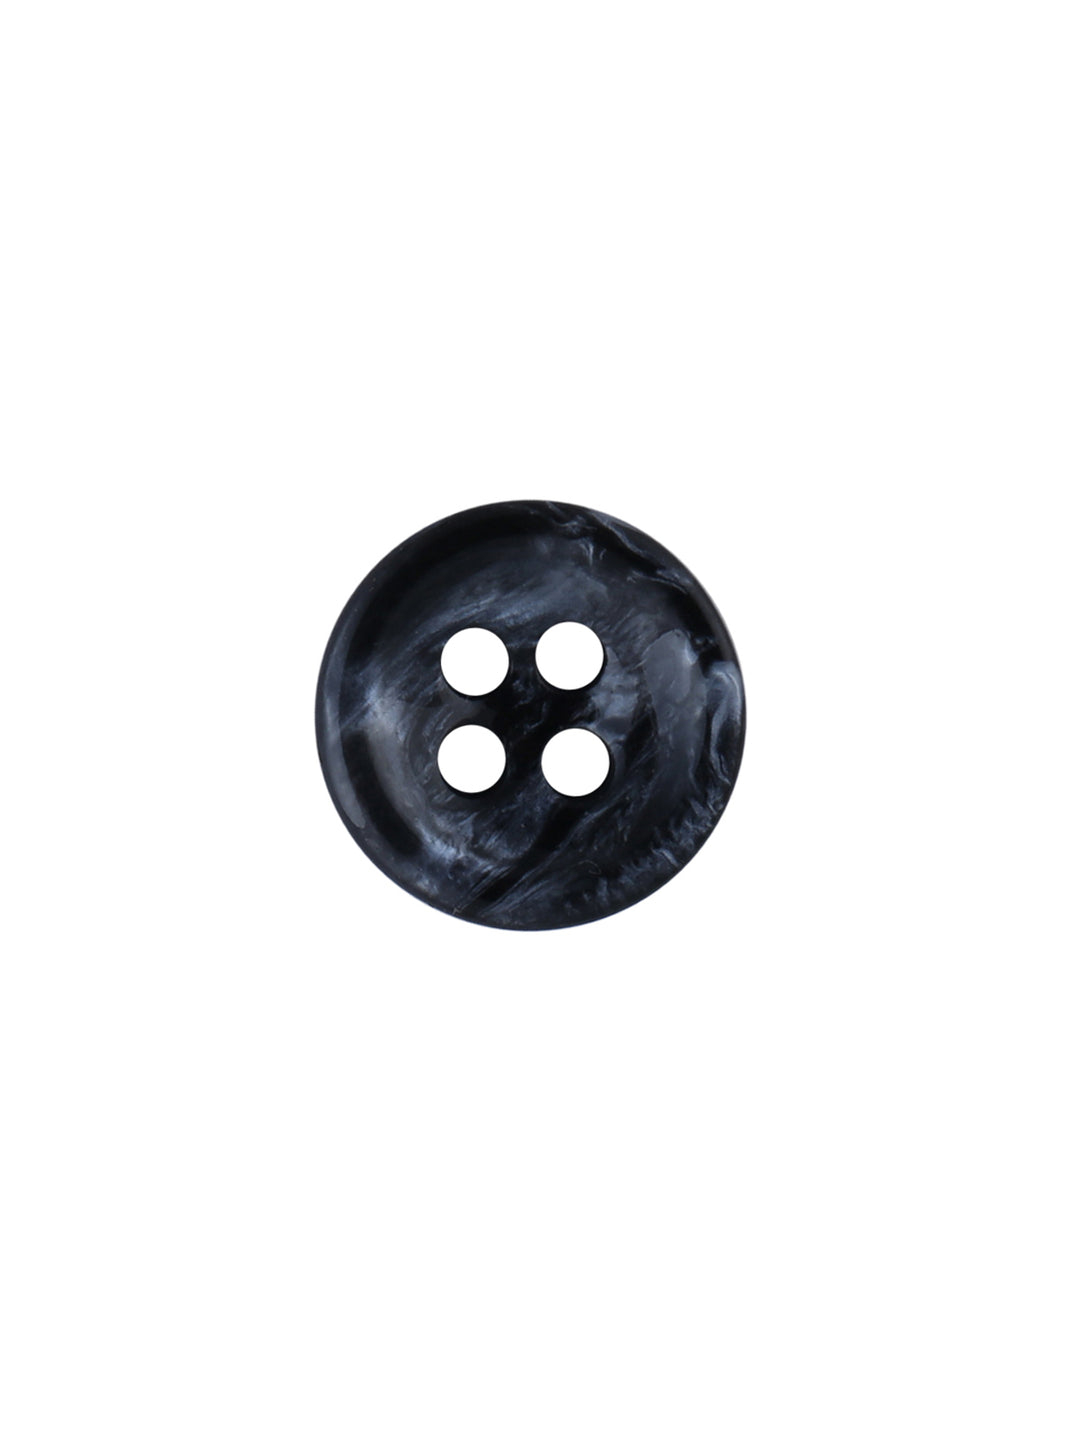 Decorative Black Marble Design 10mm Fancy Shirt Button